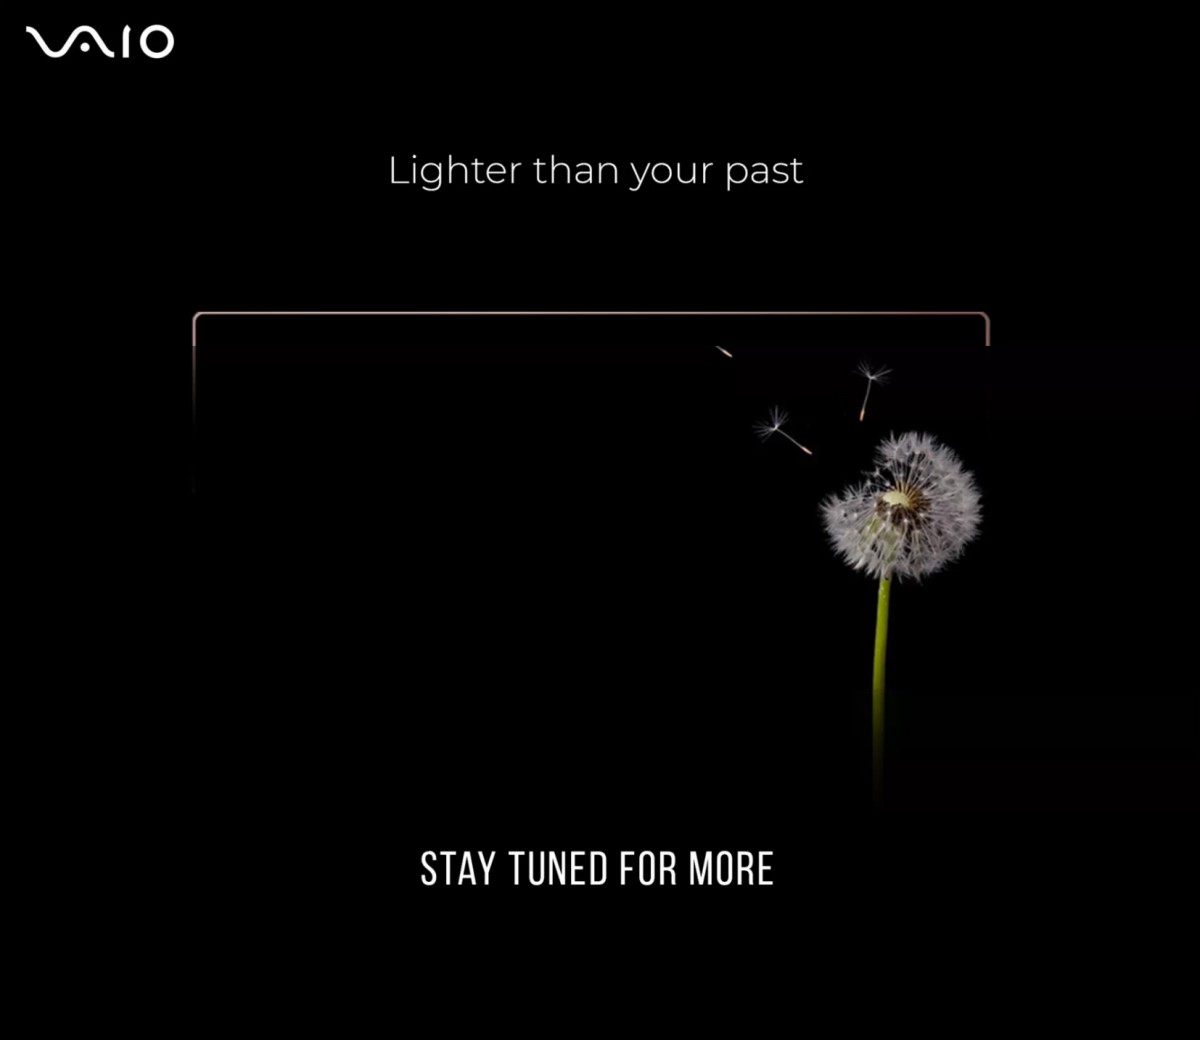  Новый тизер на Flipkart знаменует возвращение ноутбуков Vaio 